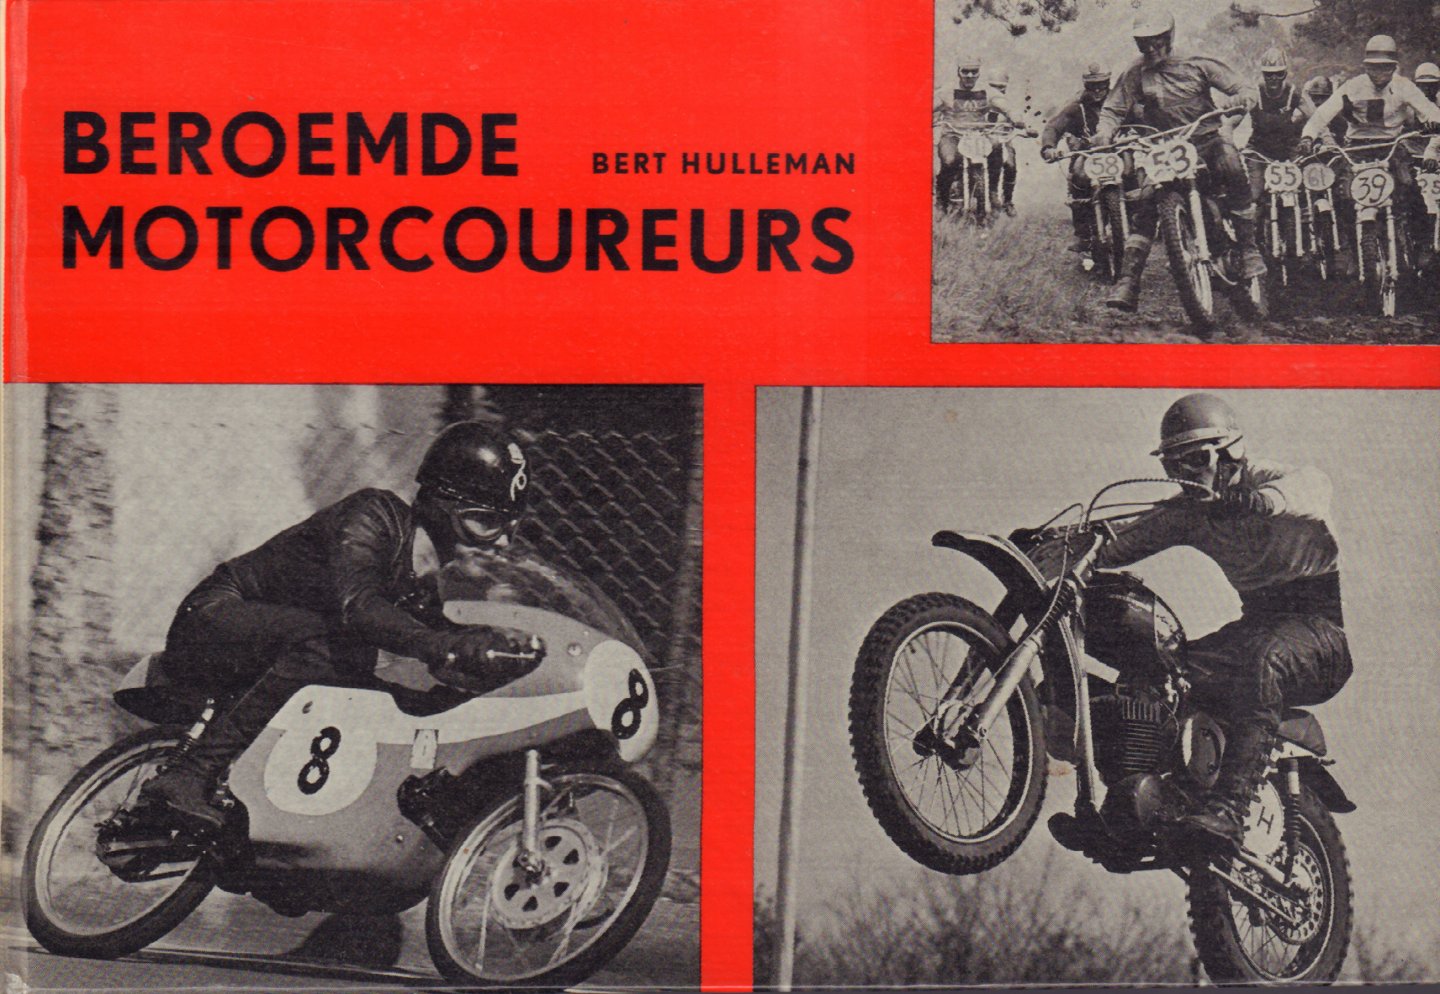 Hulleman, Bert - Beroemde Motorcoureurs, 88 pag. kleine hardcover, zeer goede staat